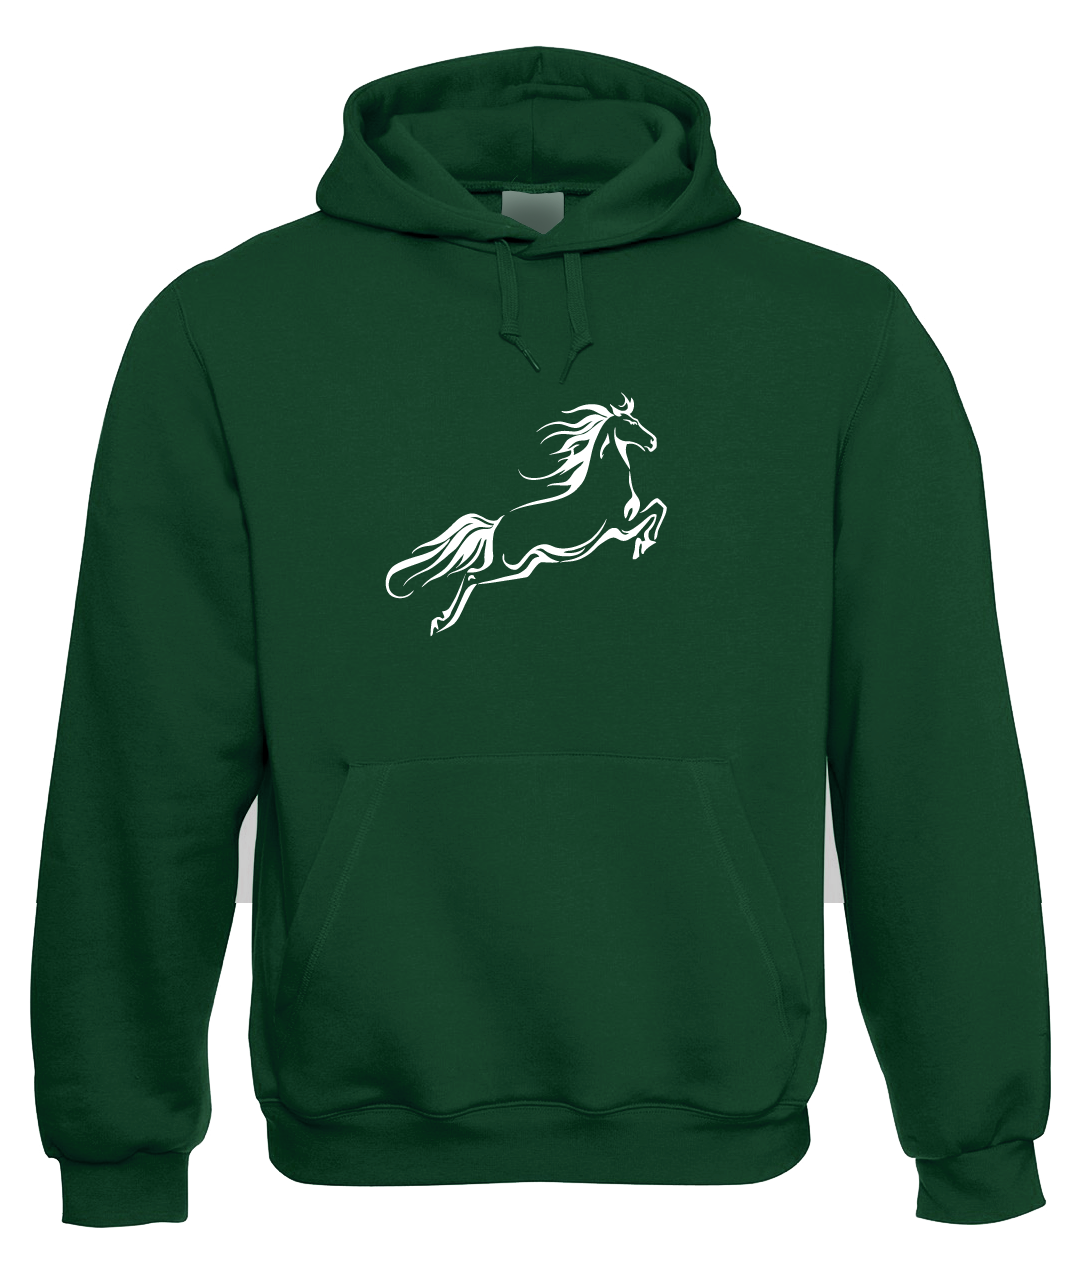 Mikina s koněm - Kůň ve skoku Velikost: S, Barva: Zelená lahvová